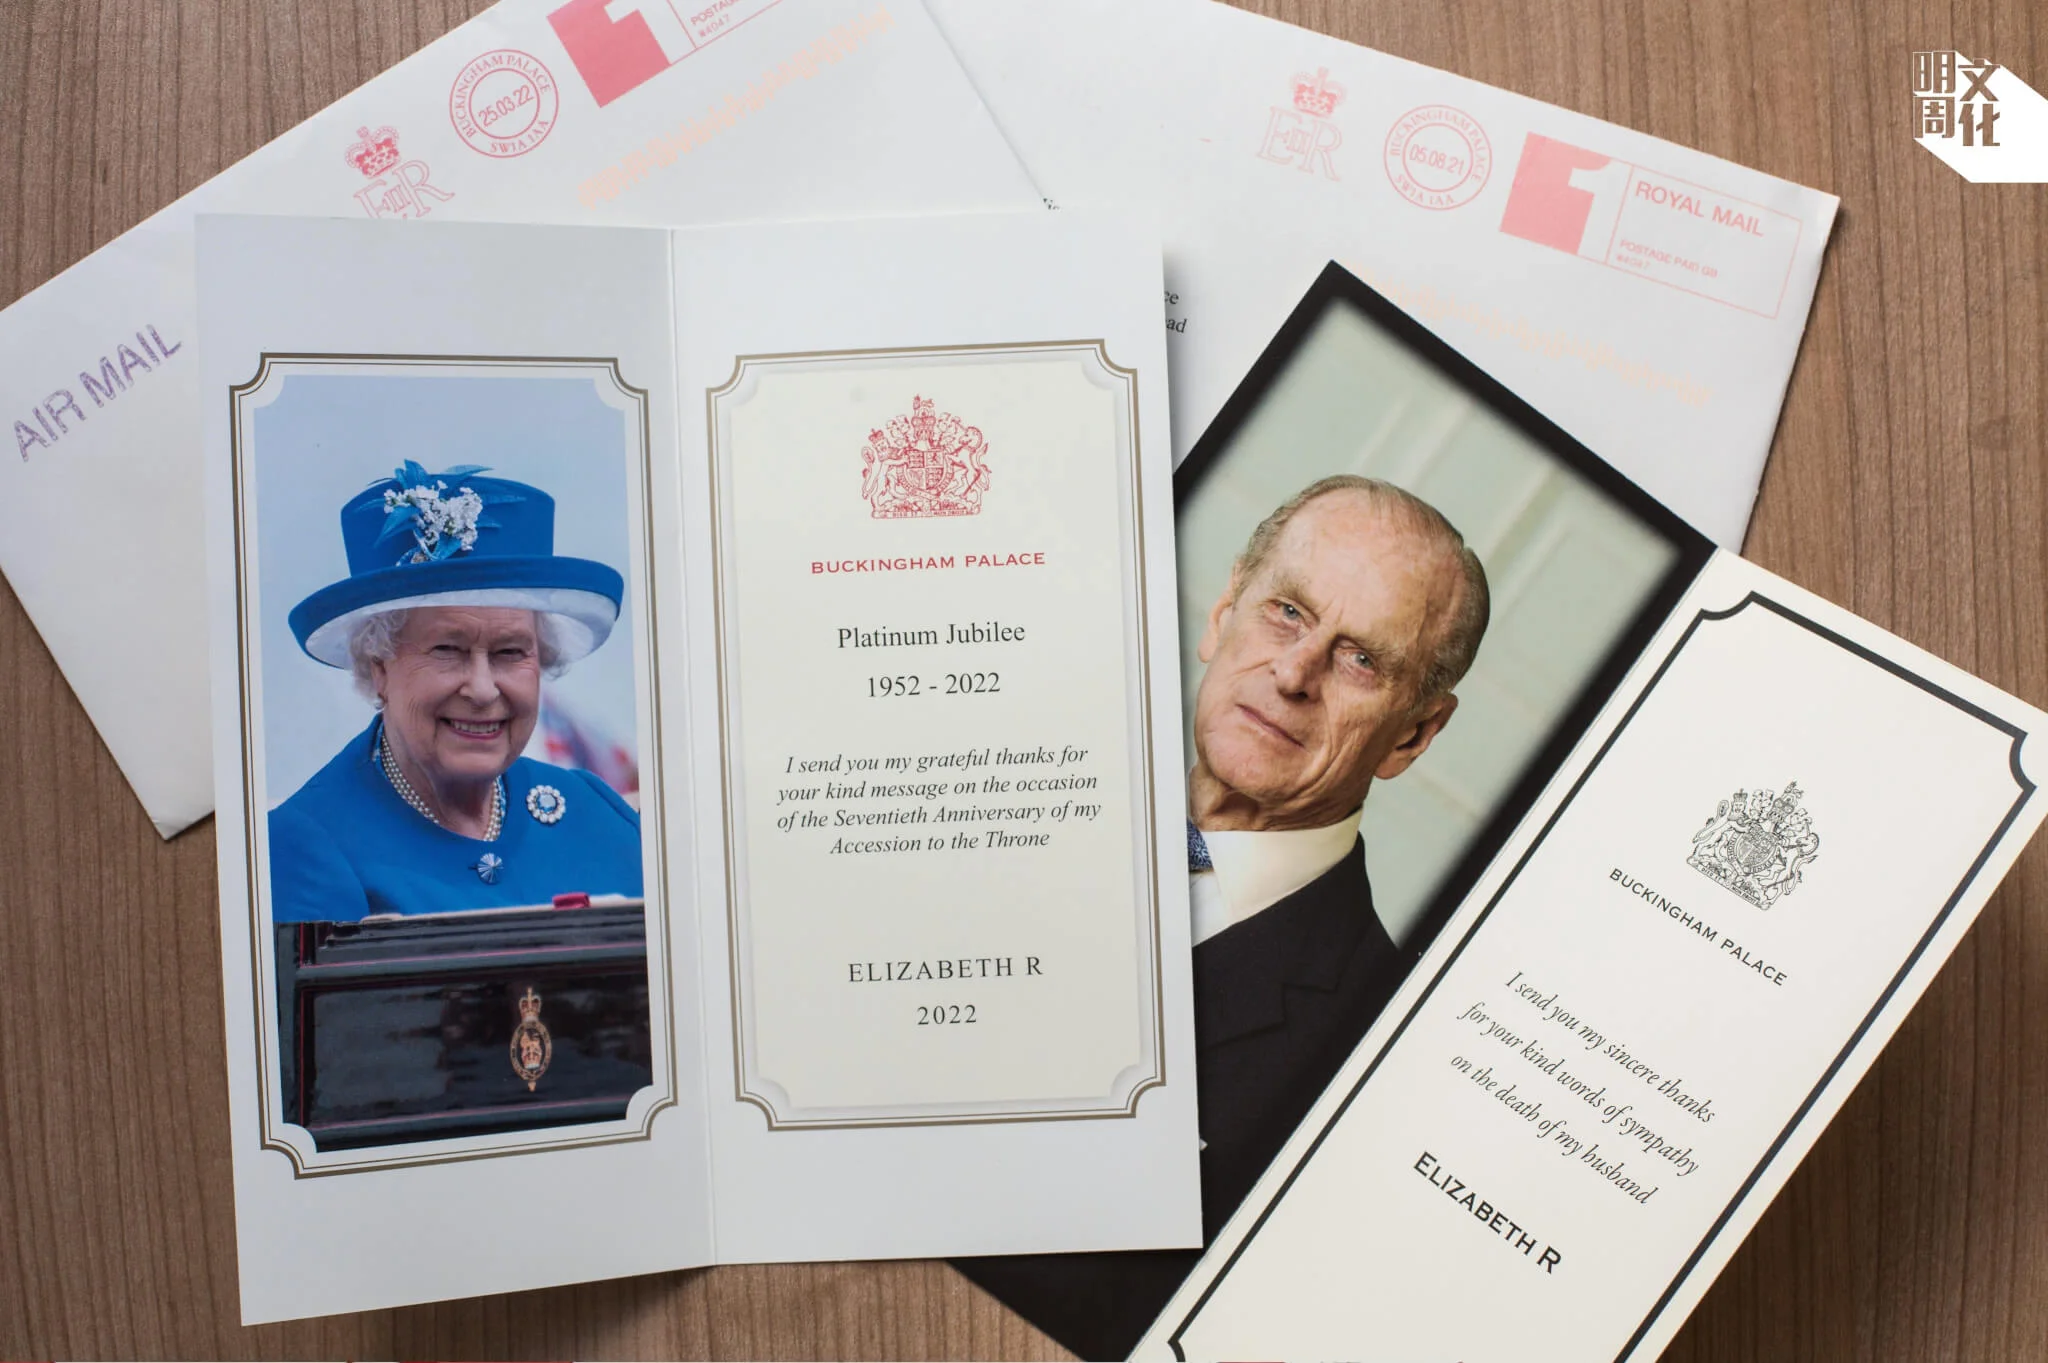 Miranda寄信祝賀英女皇登基七十周年。菲臘親王過世後，亦曾致函慰問女皇，兩封信件都獲回覆。